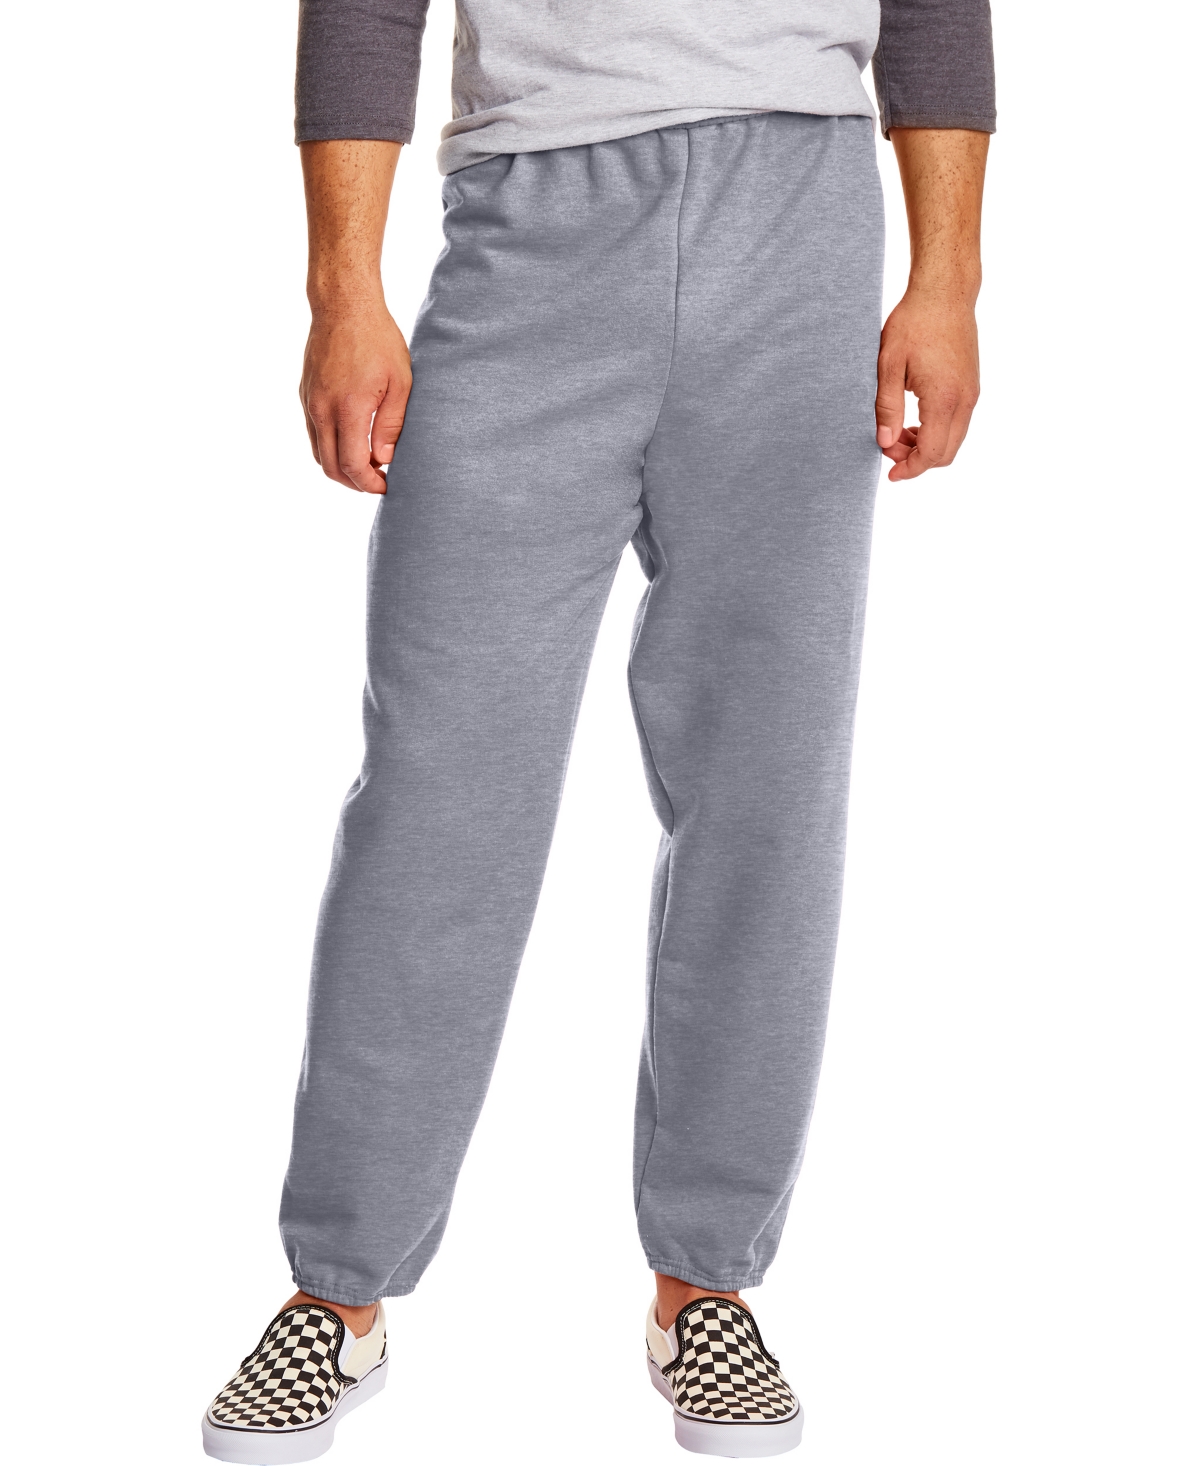 EcoSmart Men's 32" Fleece Sweatpants, 2-Pack - Charcoal